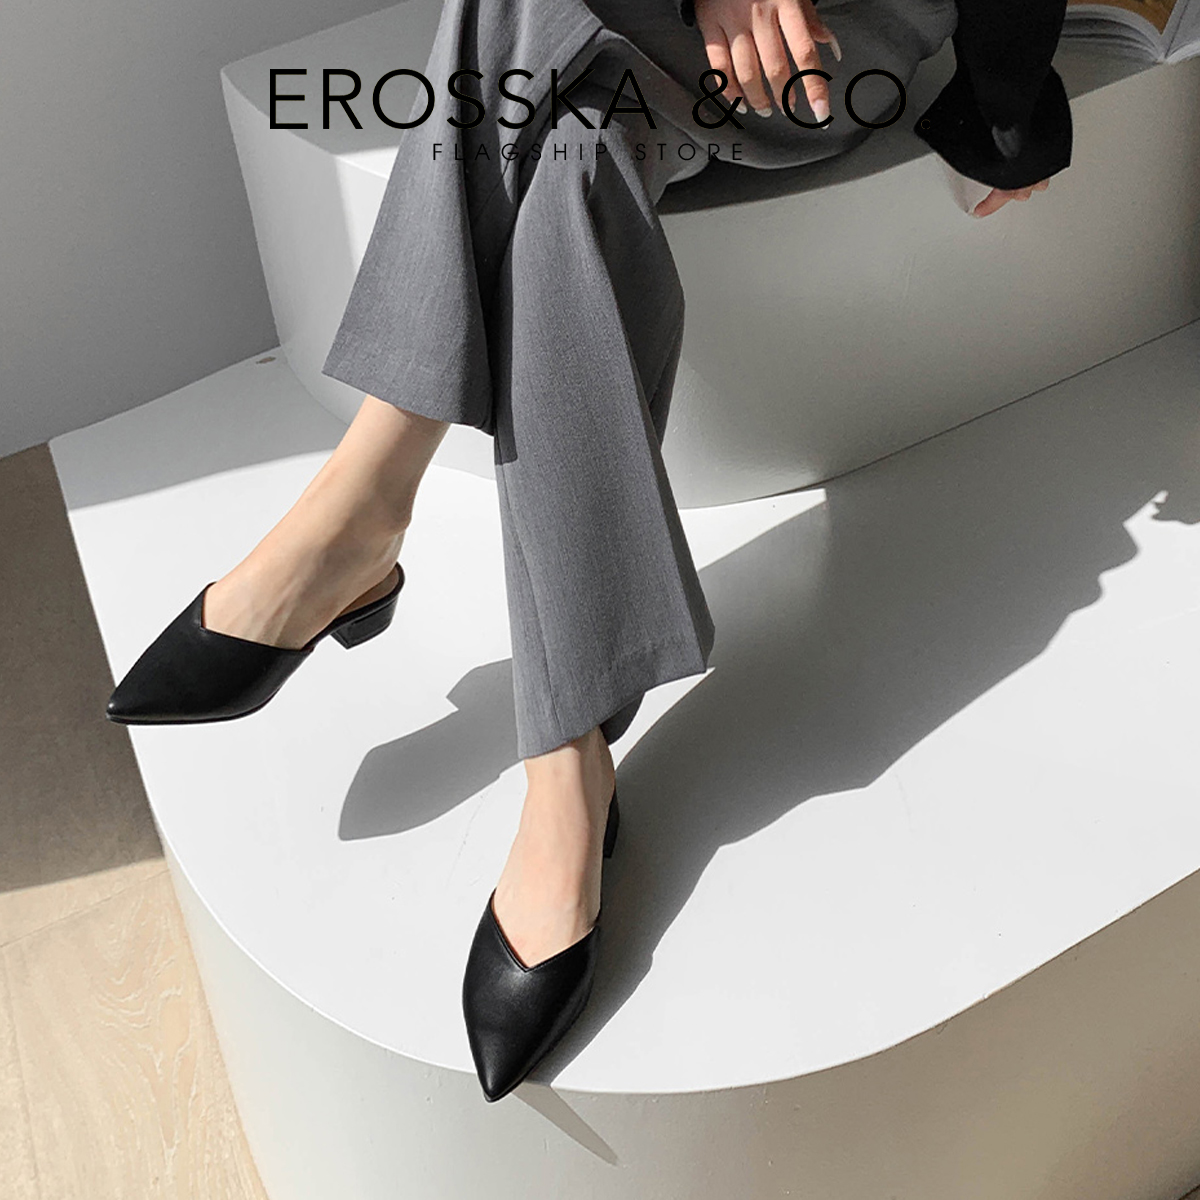 Erosska - Giày sục cao gót bít mũi kiểu dáng Hàn Quốc cao 3cm EM076